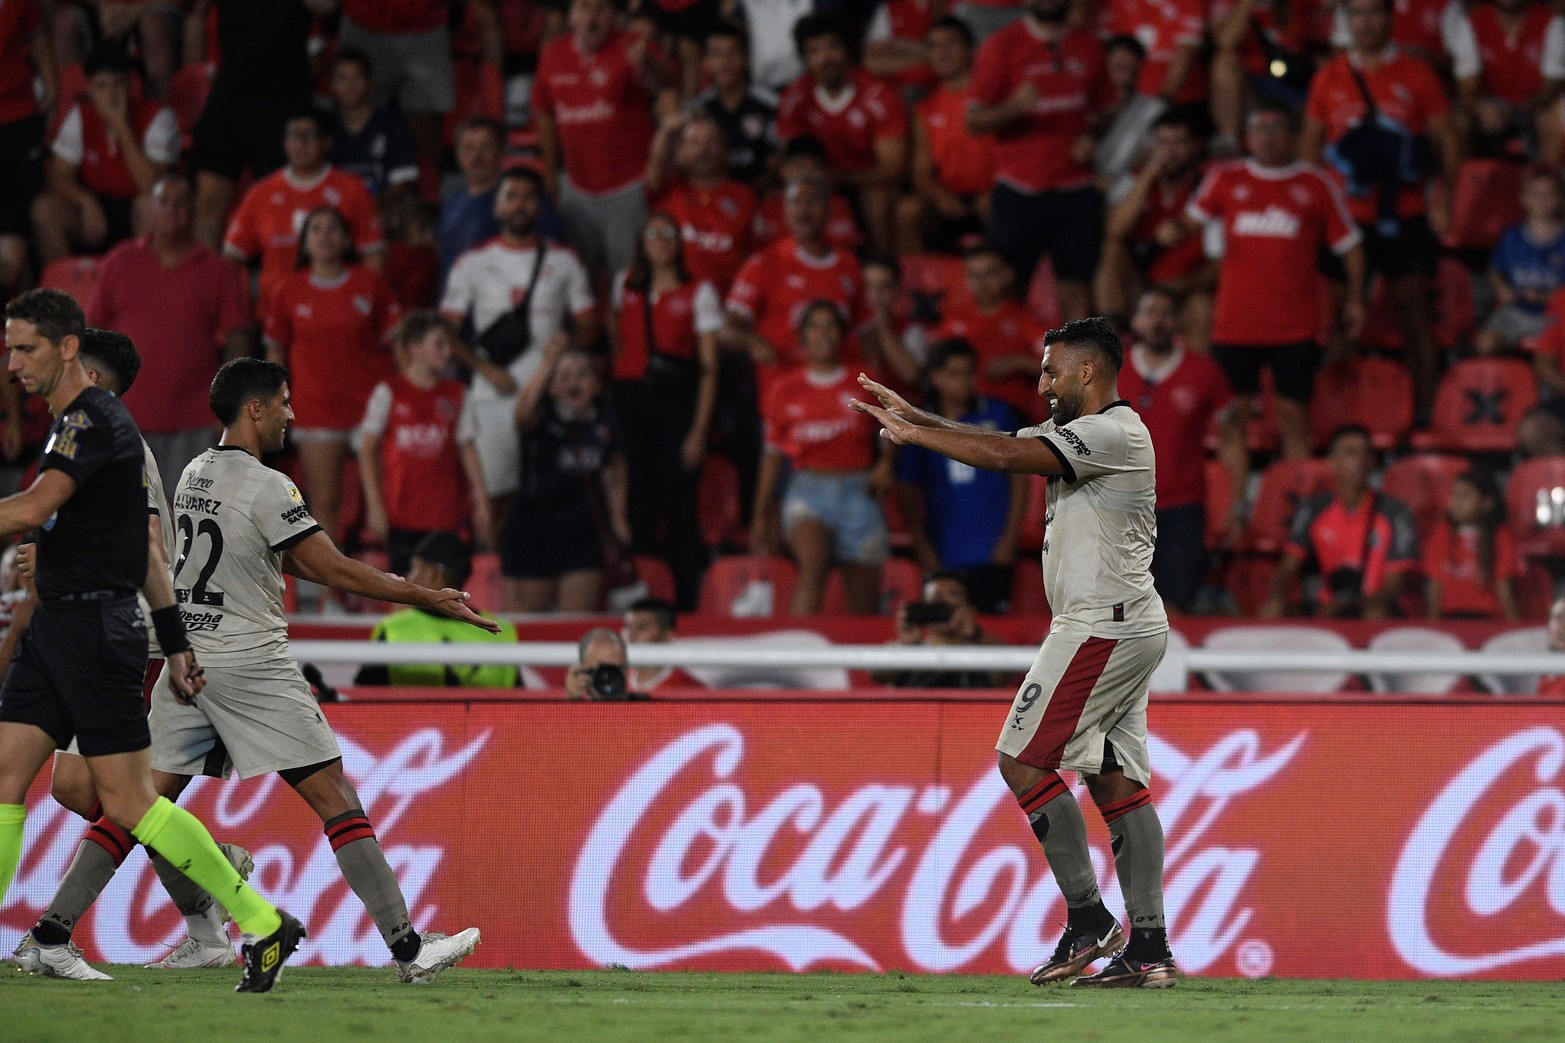 En su visita a Independiente, Colón rescató un empate